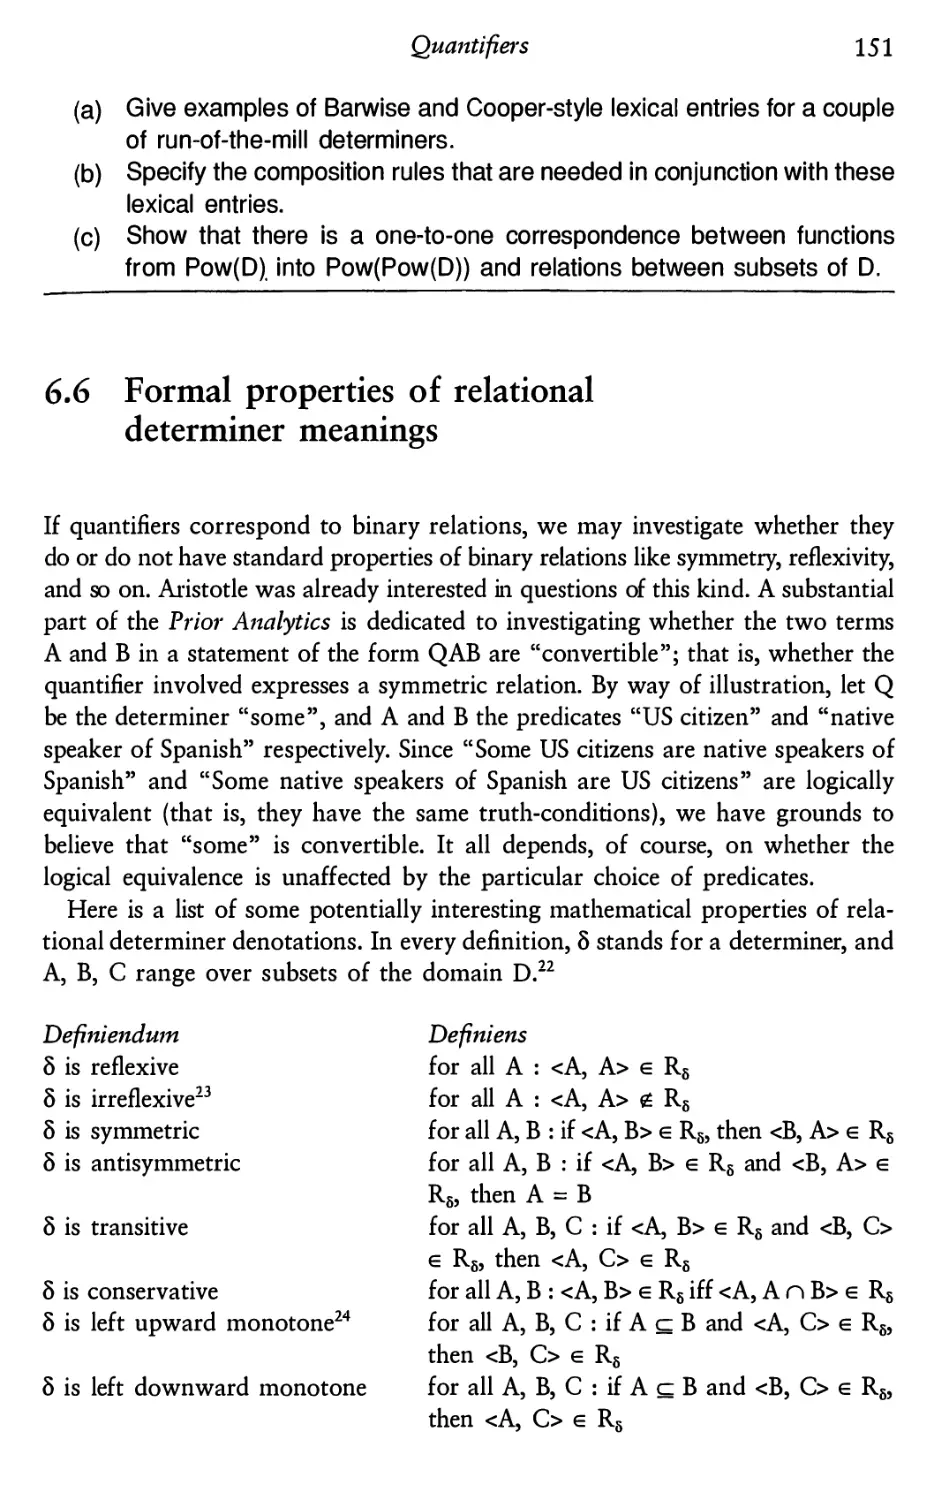 6.6 Formal properties of relational determiner meanings